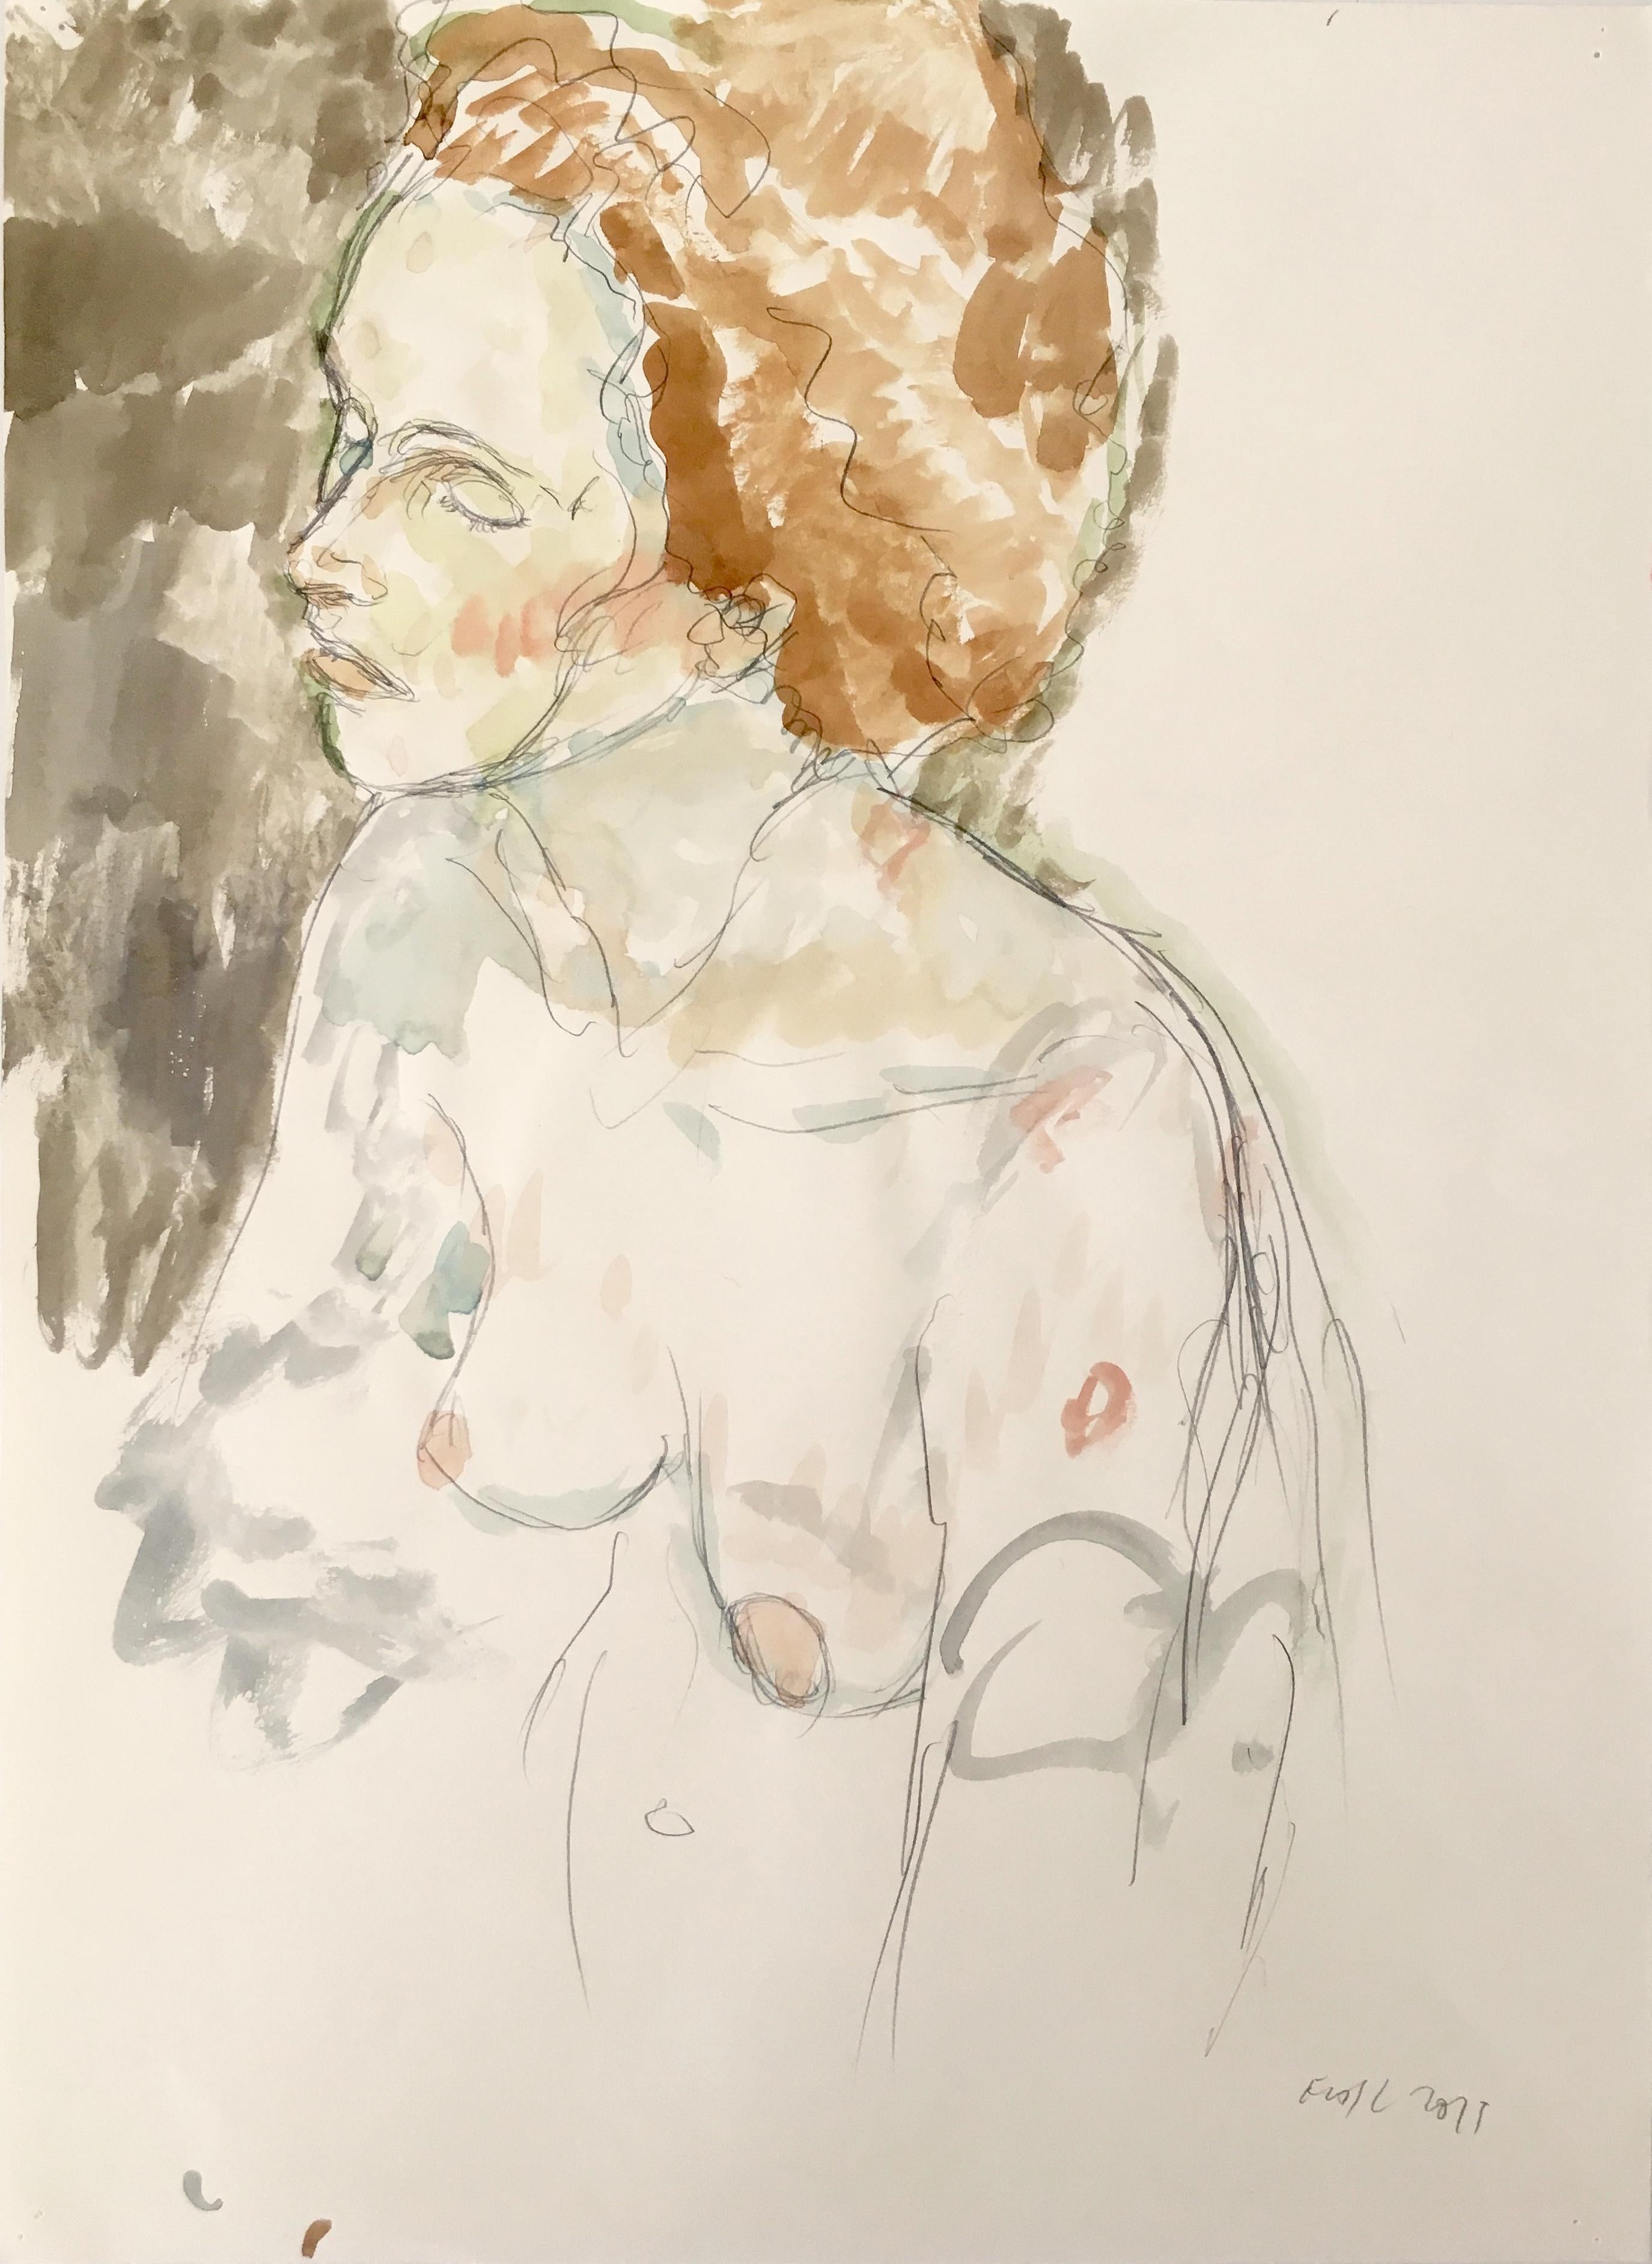 Nude Eduardo Alvarado - Torse de femme nue, aquarelle et graphite dans des tons terreux sourds